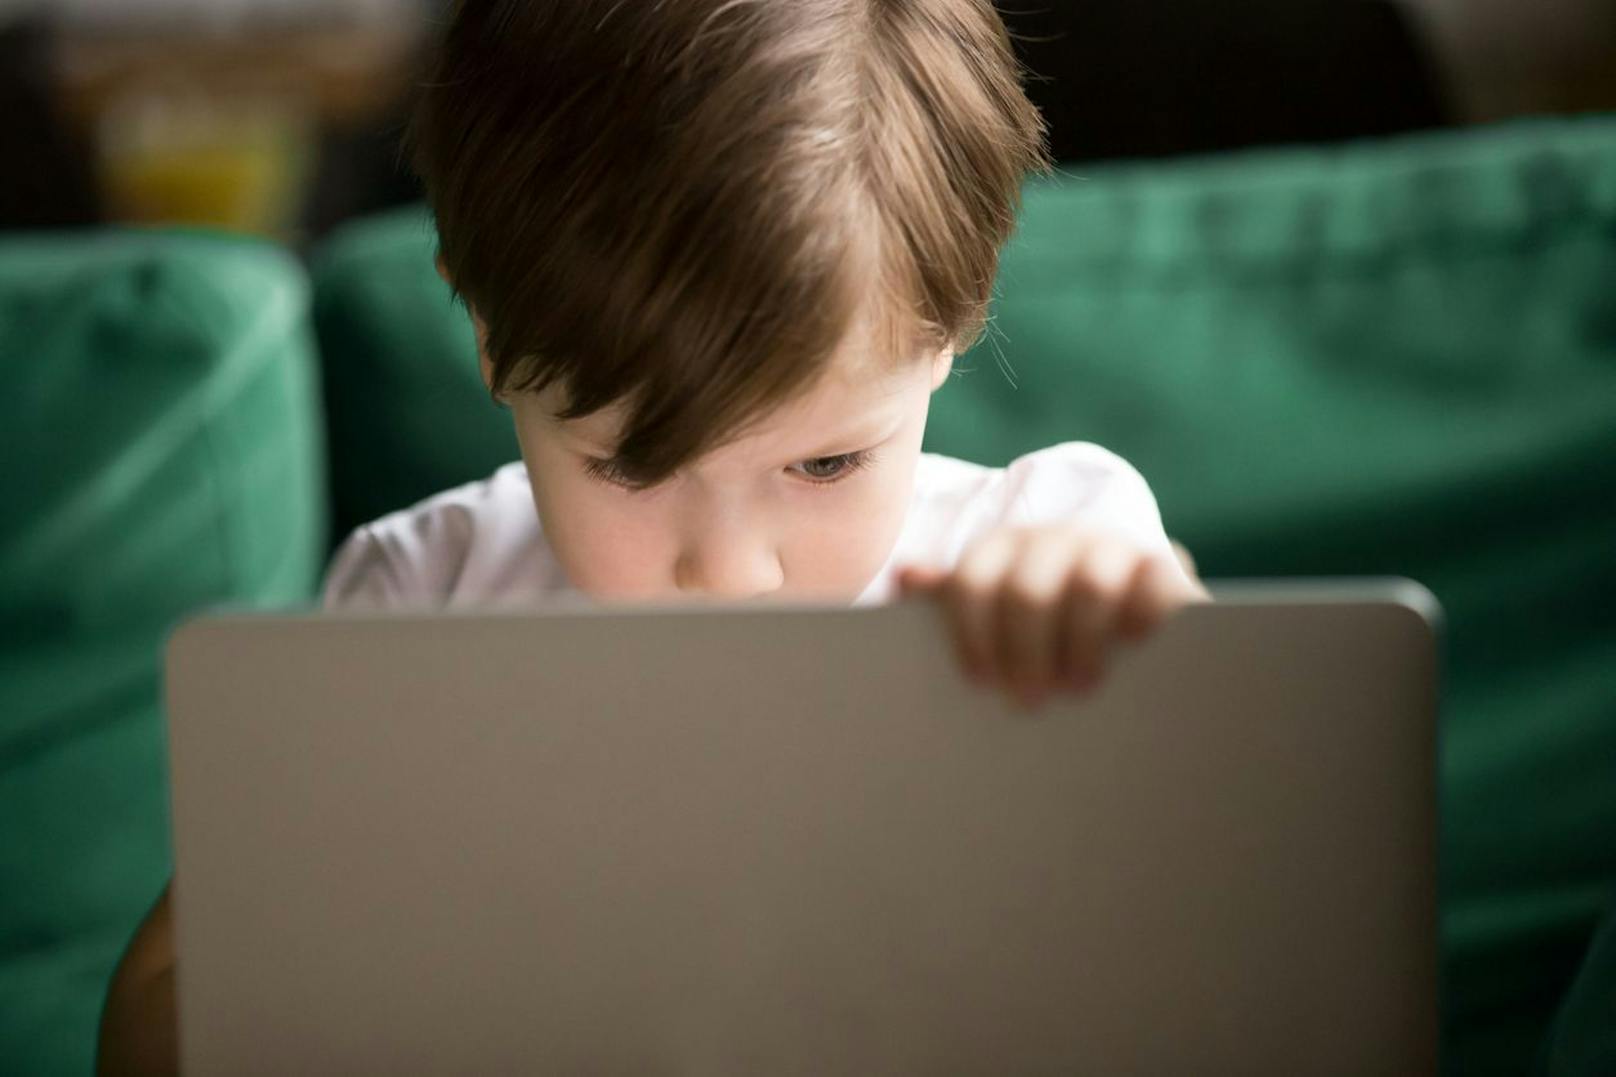 Kinder müssen besser vor Pornografie im Internet geschützt werden. Technische Schutzvorkehrungen sollen dabei helfen.